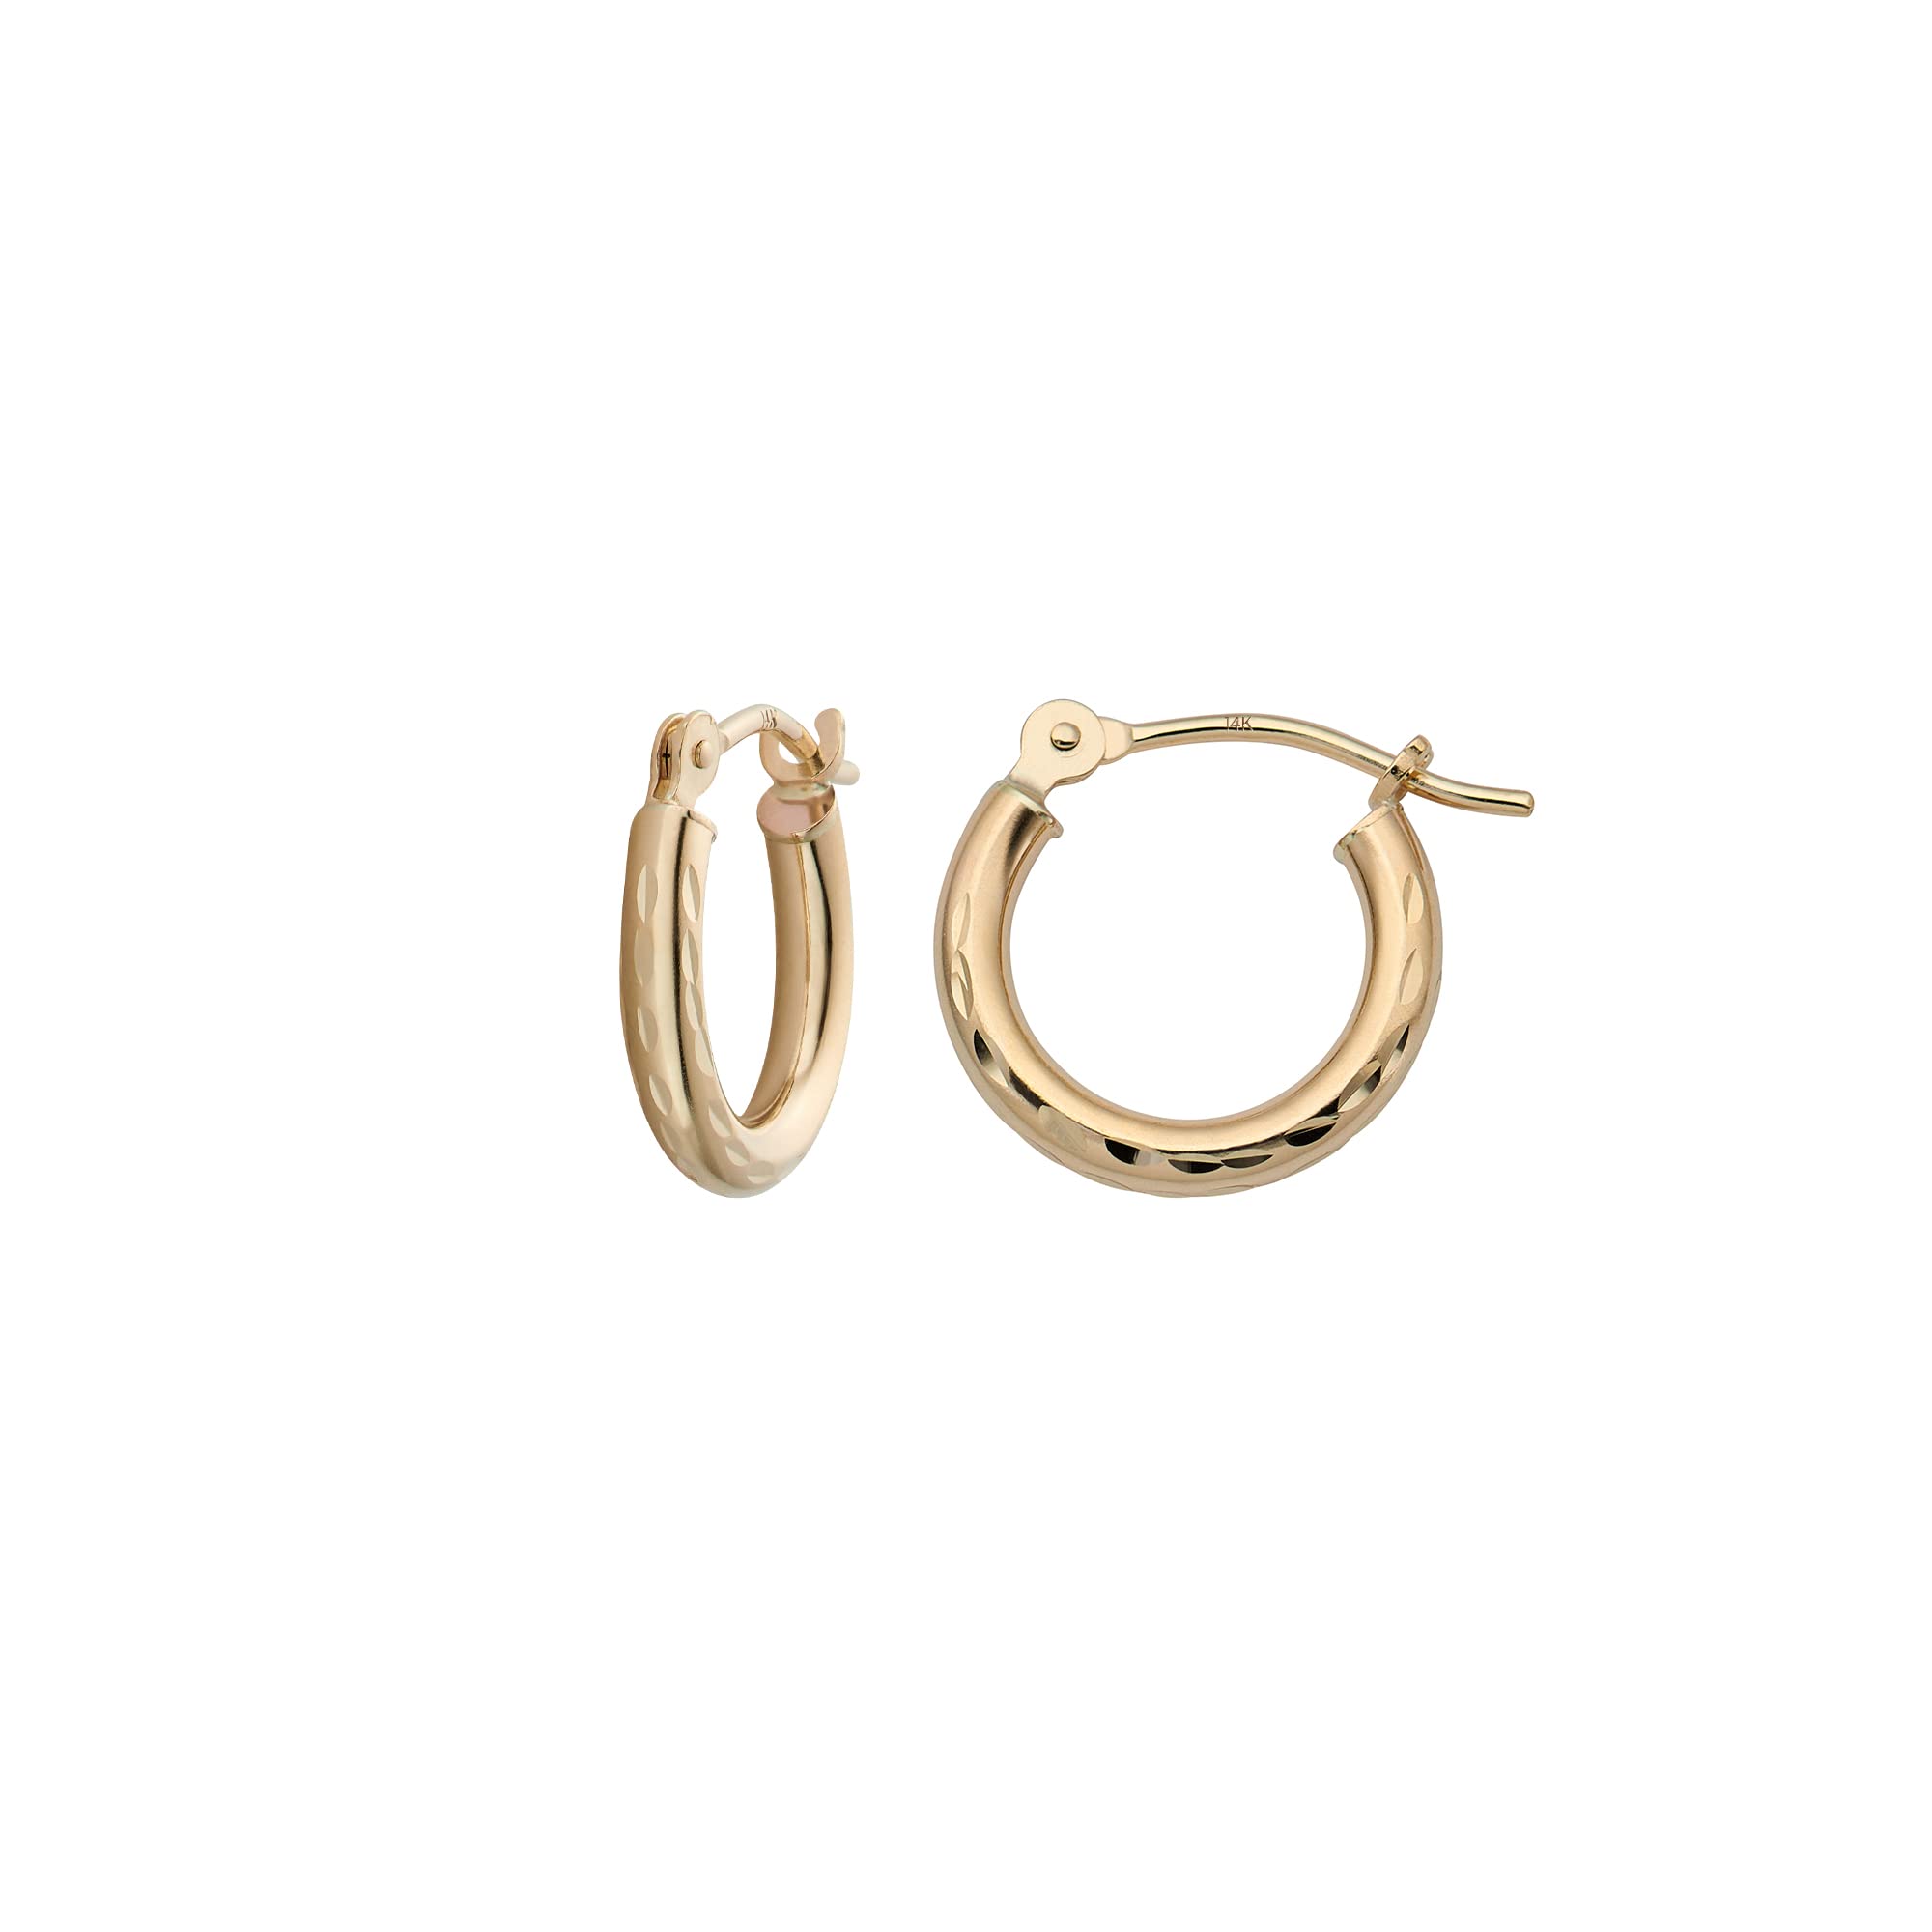 MAZZERI 14k Diamond Cut Gold Hoop Earrings, 2-mm, Hypoallergenic